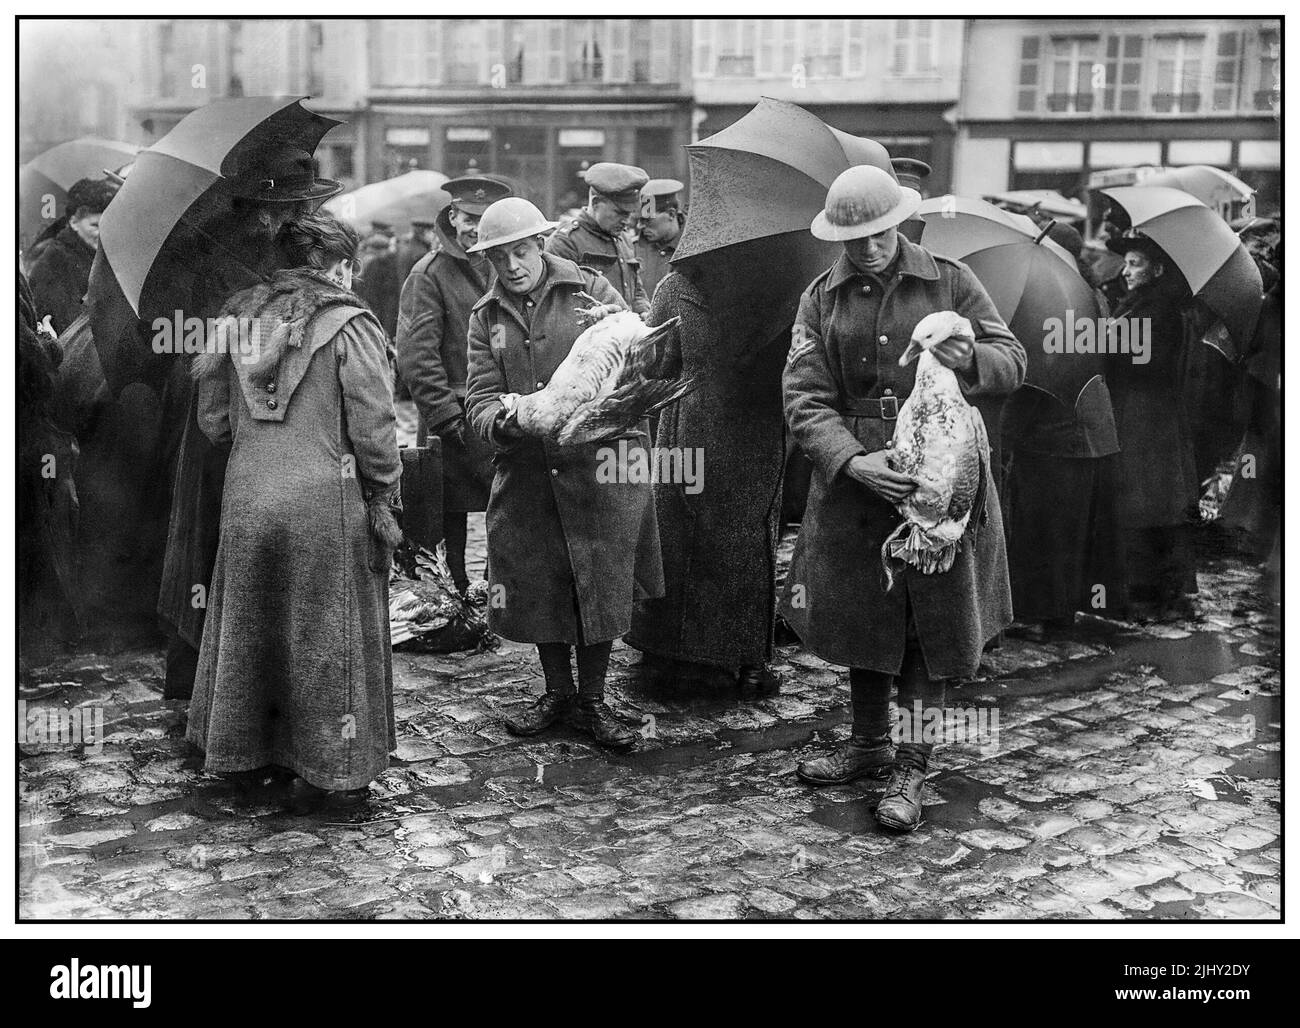 WW1 Weihnachten an der Westfront, 1914-1918 britische Truppen kaufen Gänse, für ihre Gruppe Weihnachtsessen, auf dem Markt in Bailleul, Frankreich Dezember 1916. Datum Dezember 1916 (Erster Weltkrieg) Stockfoto